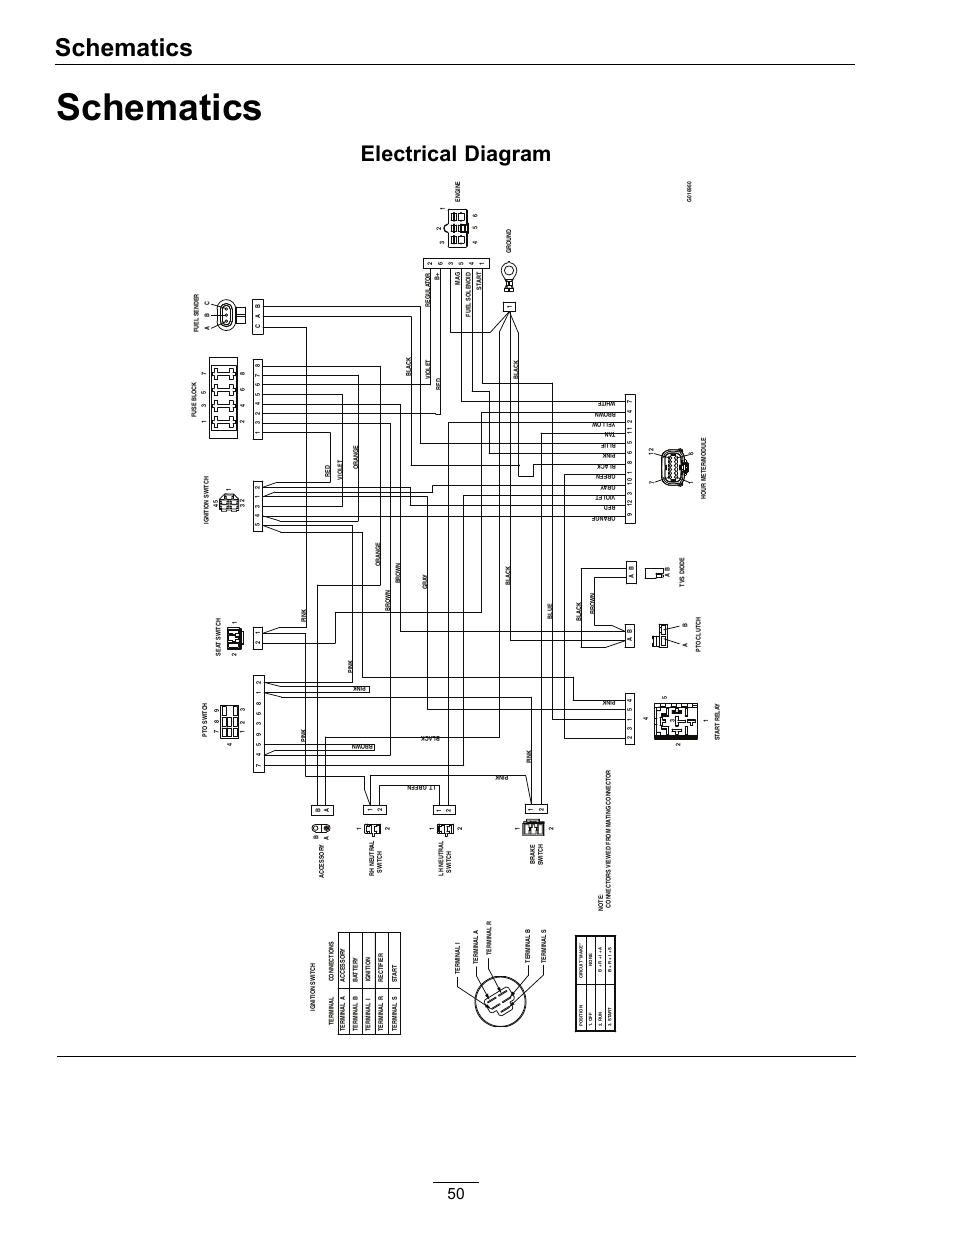 kawasaki mule 3010 wiring diagram